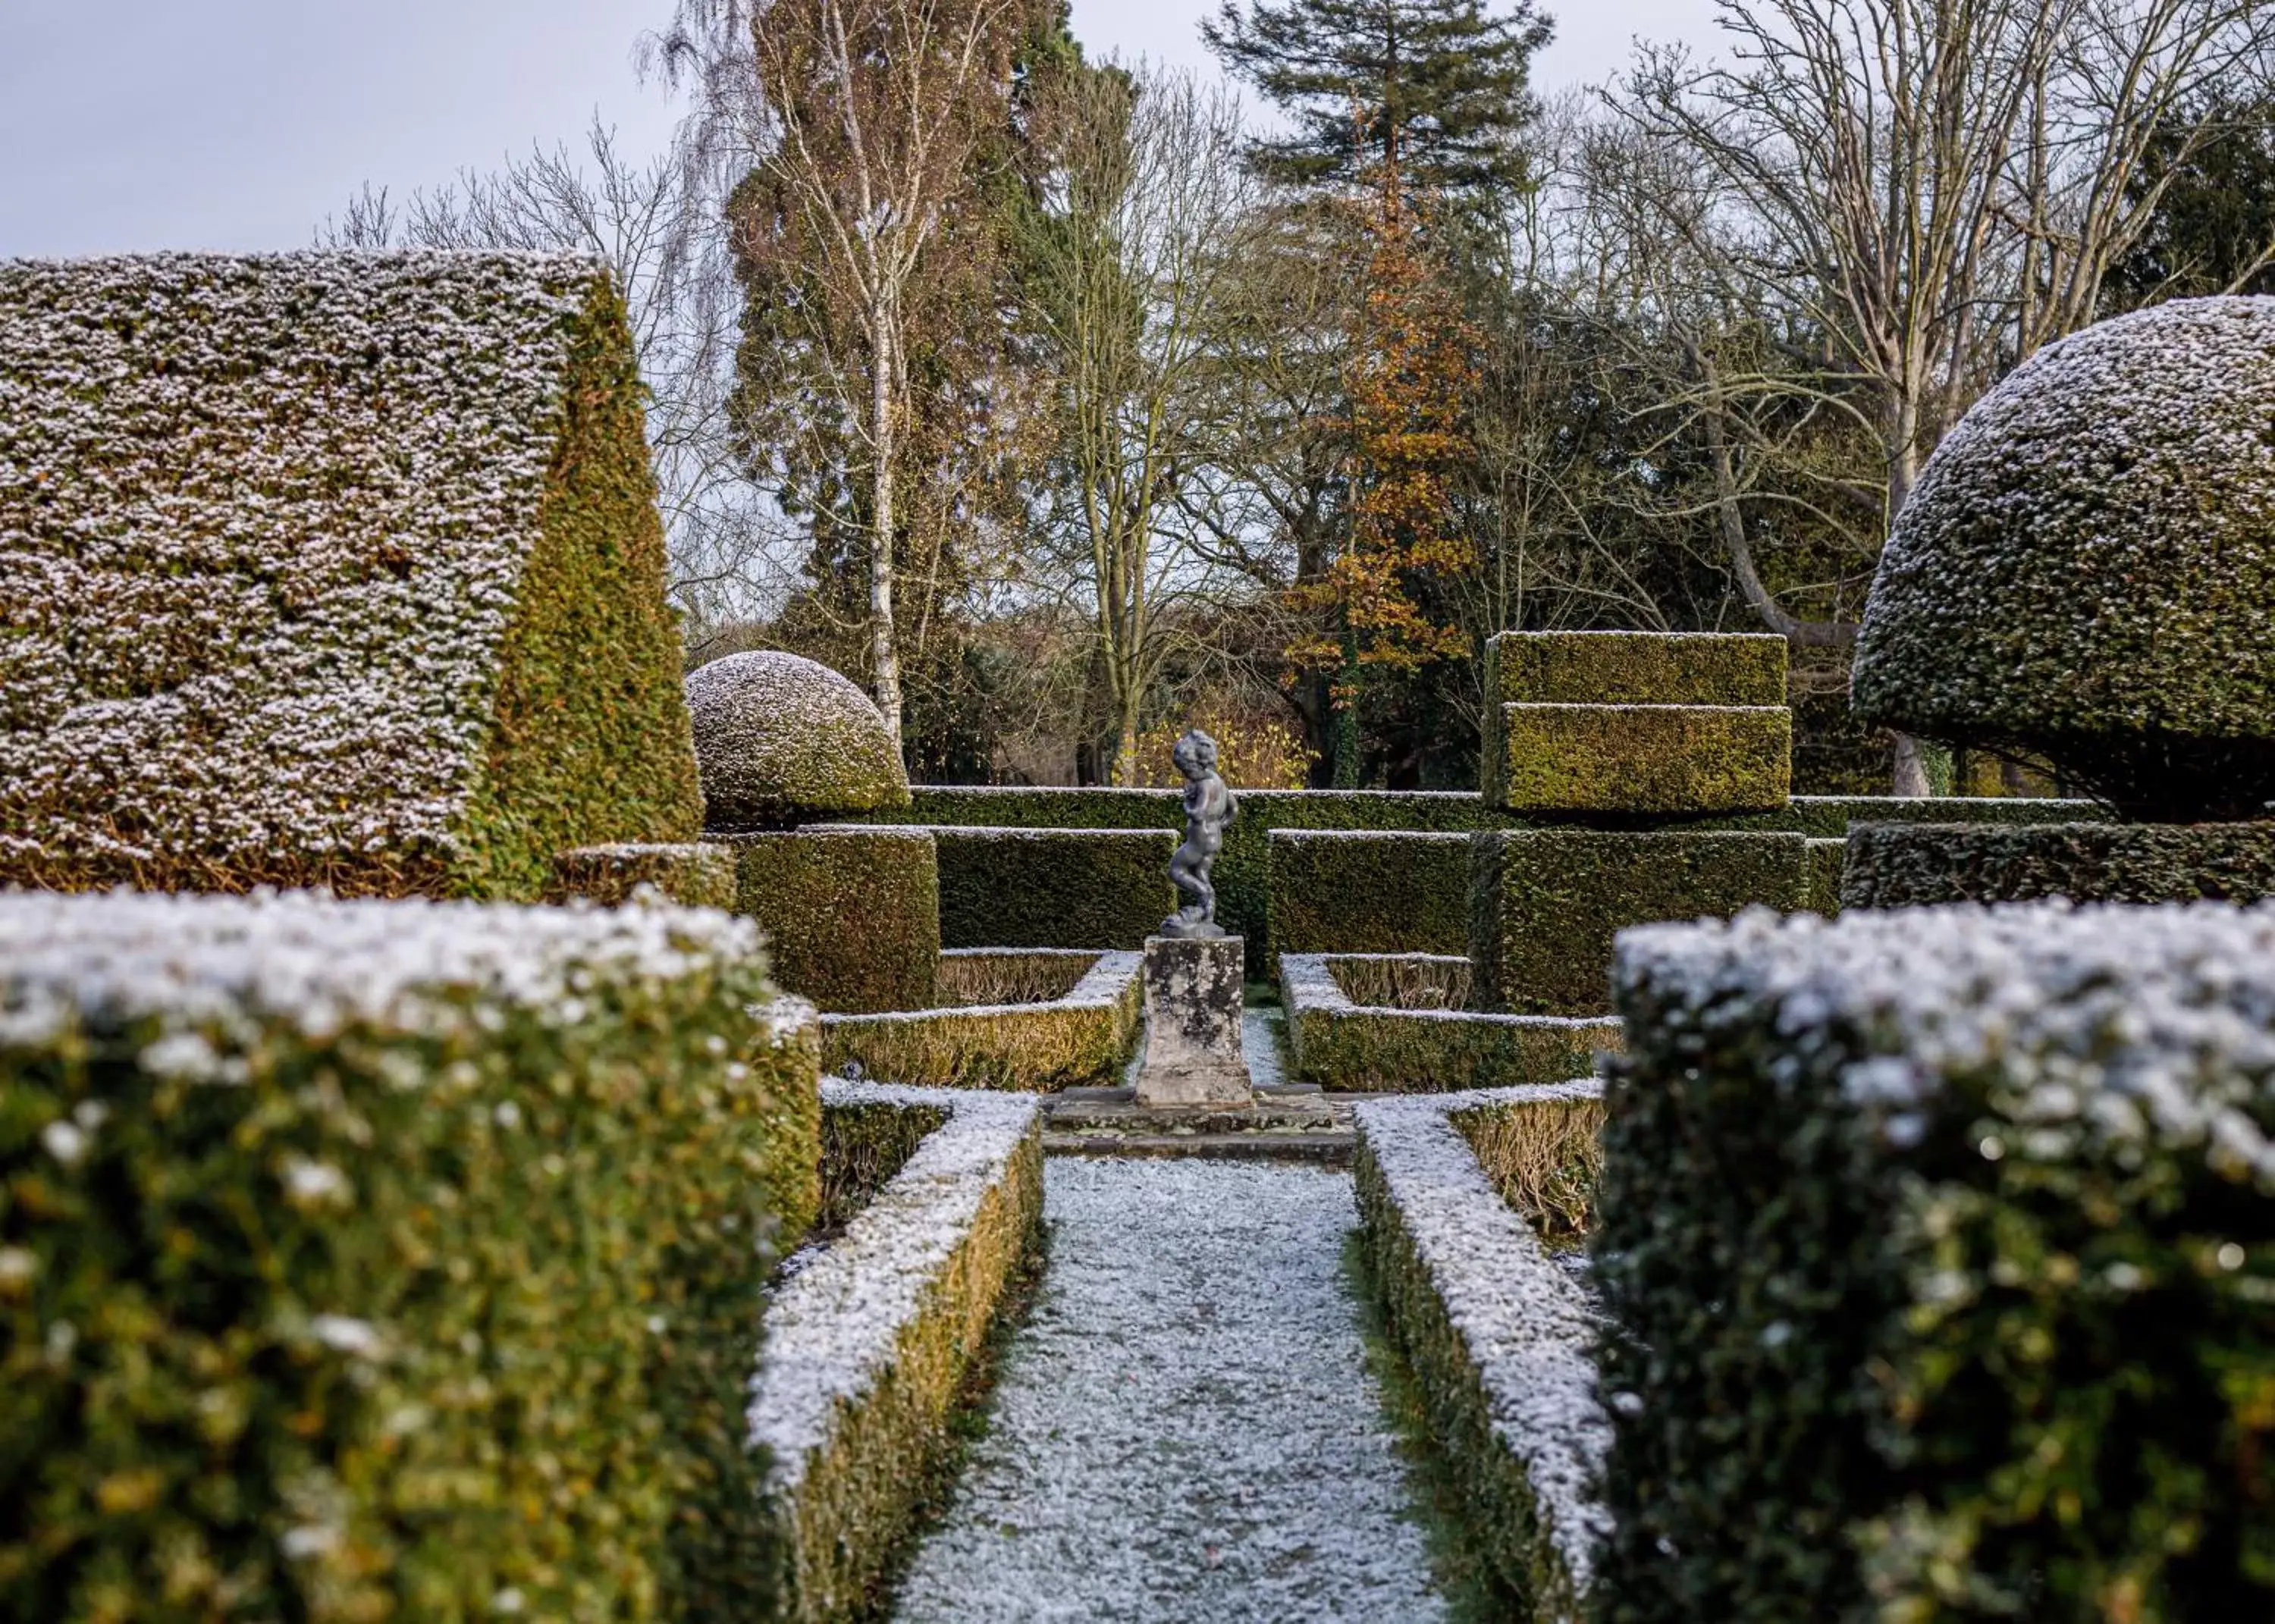 Winter, Garden in Great Fosters - Near Windsor